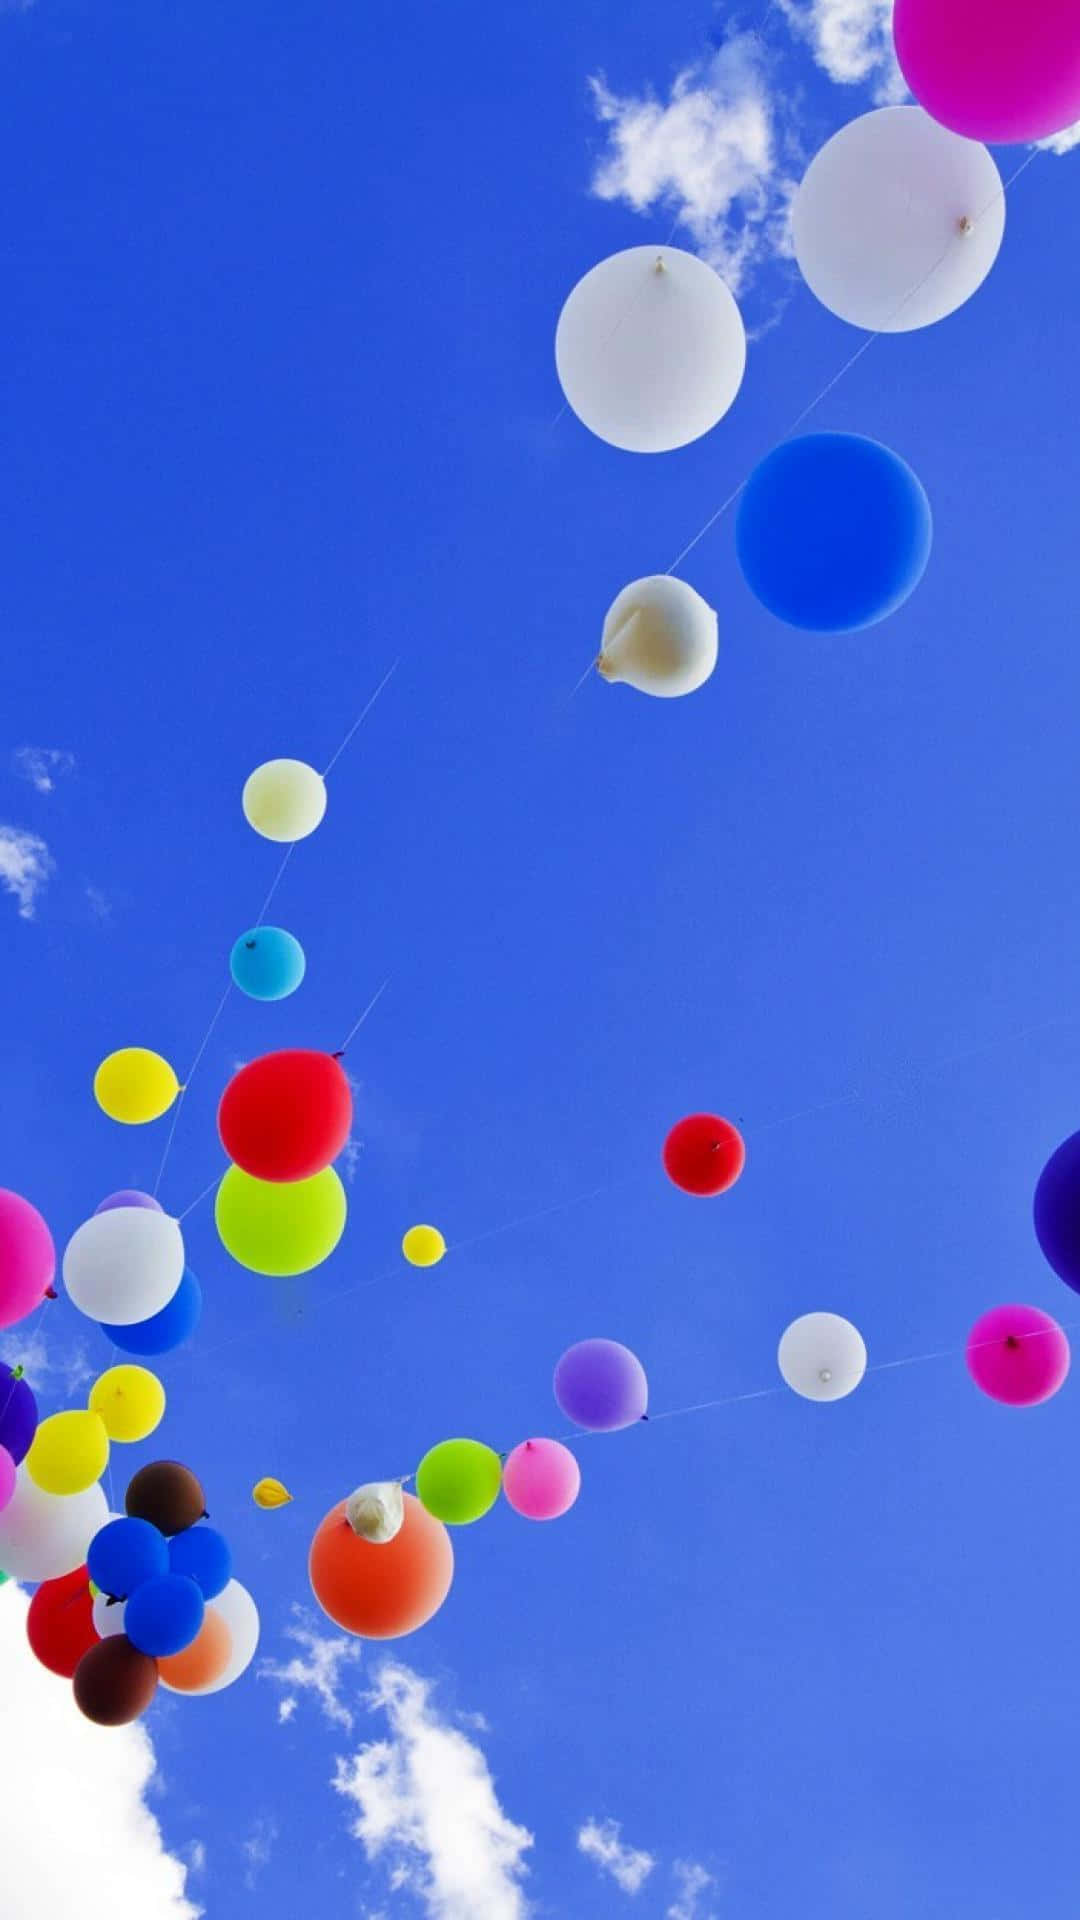 Bunteluftballons Fliegen Am Himmel.